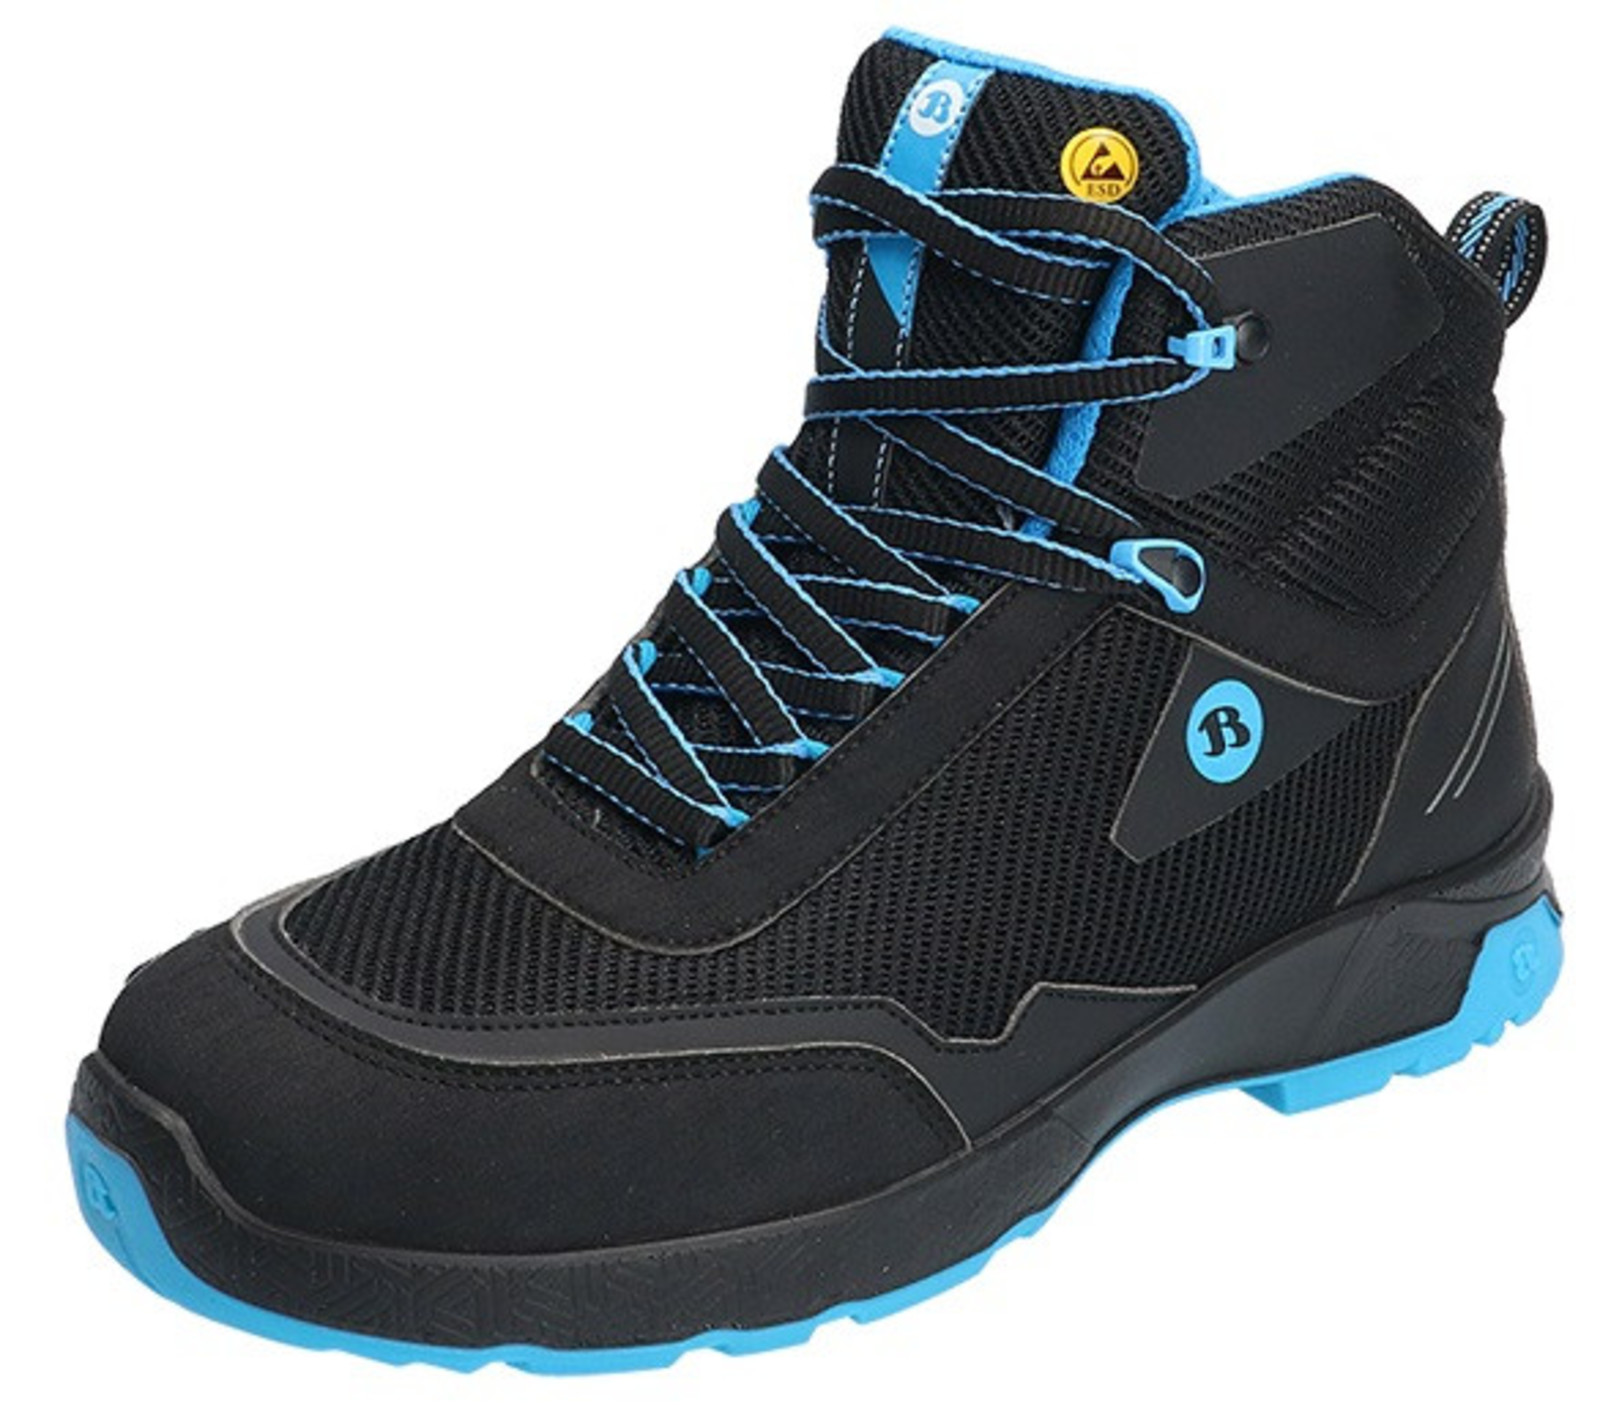 Bezpečnostná členková obuv Baťa Summ One S3 ESD - veľkosť: 47, farba: čierna